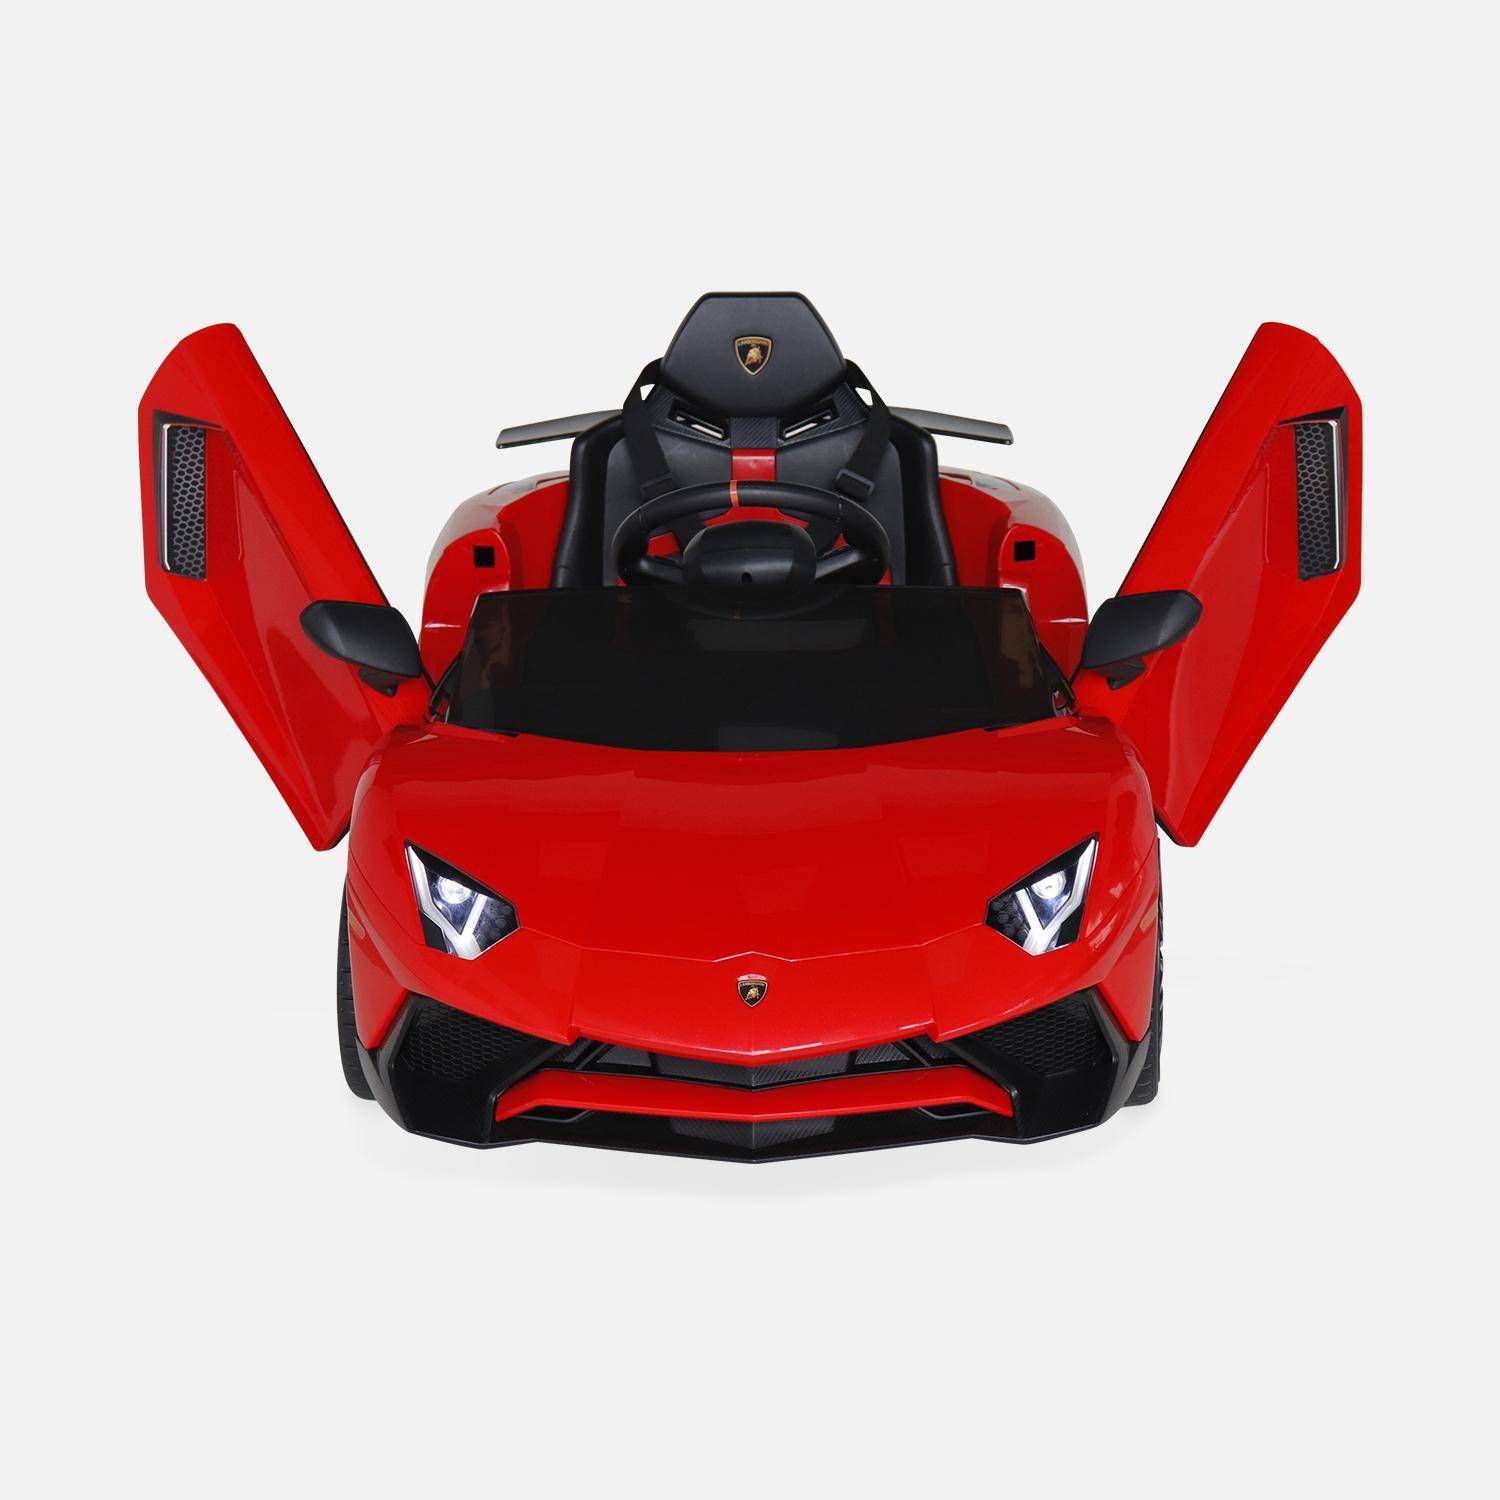 12V Lamborghini elektrische kinderauto, rood, 1 zitplaats, met autoradio, afstandsbediening, MP3, USB-poort en koplampen. Snelle levering, 2 jaar garantie.,sweeek,Photo5